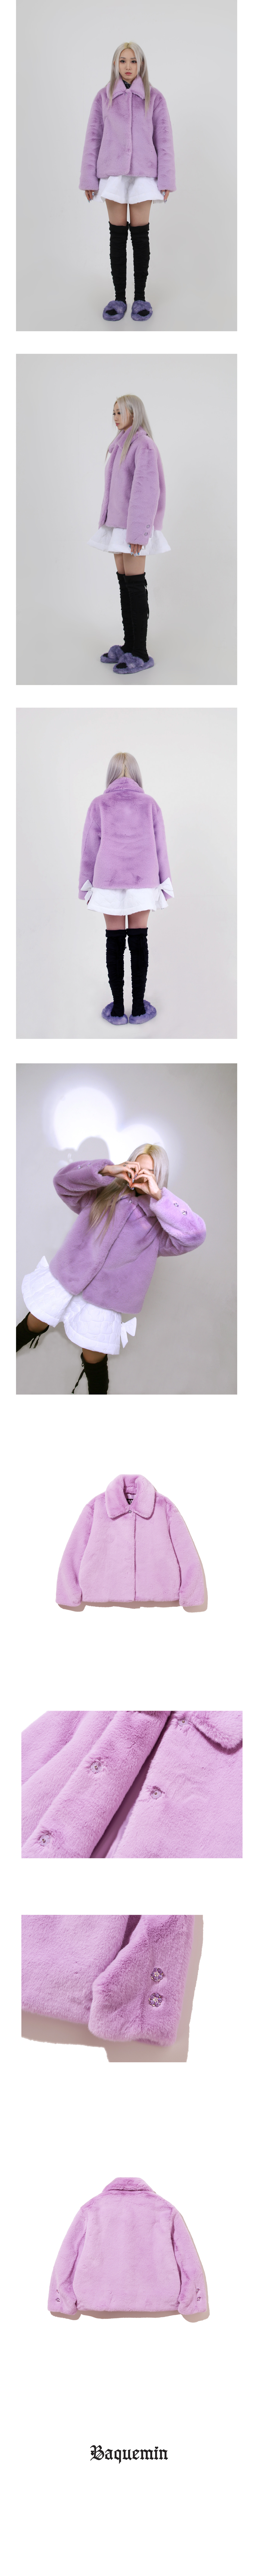 Soft love fur jacket (lavender)